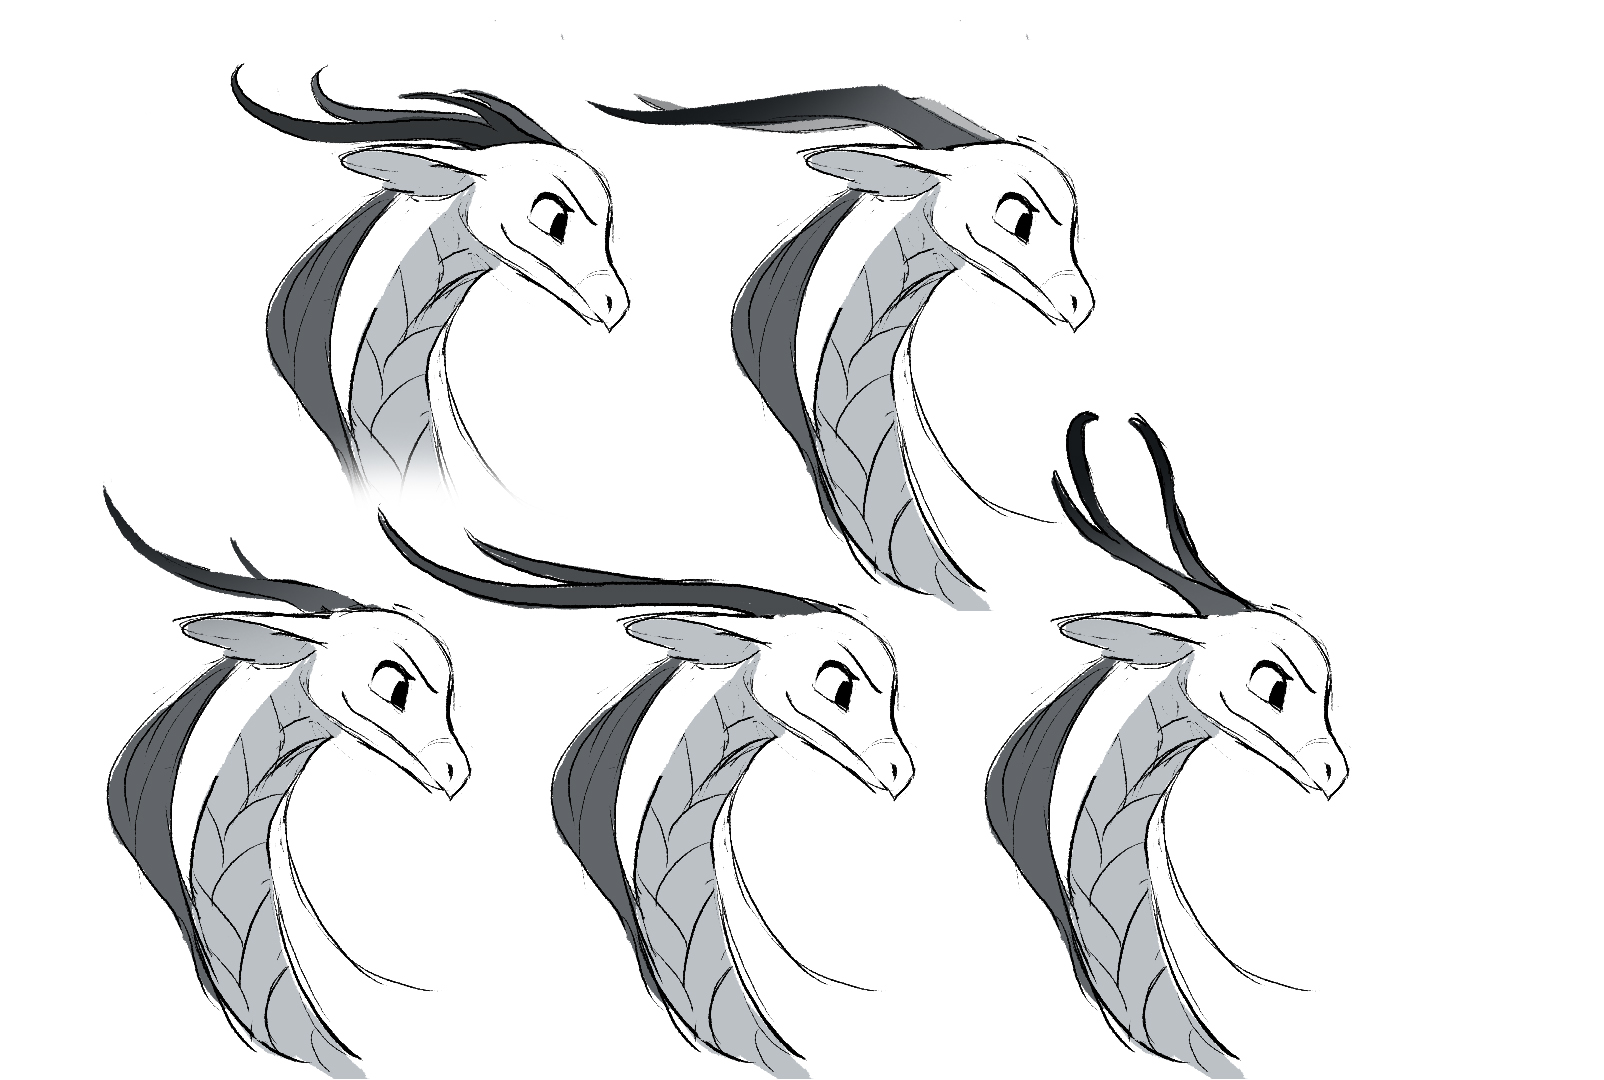 Chang rough sketch+Dragon form horn.jpg